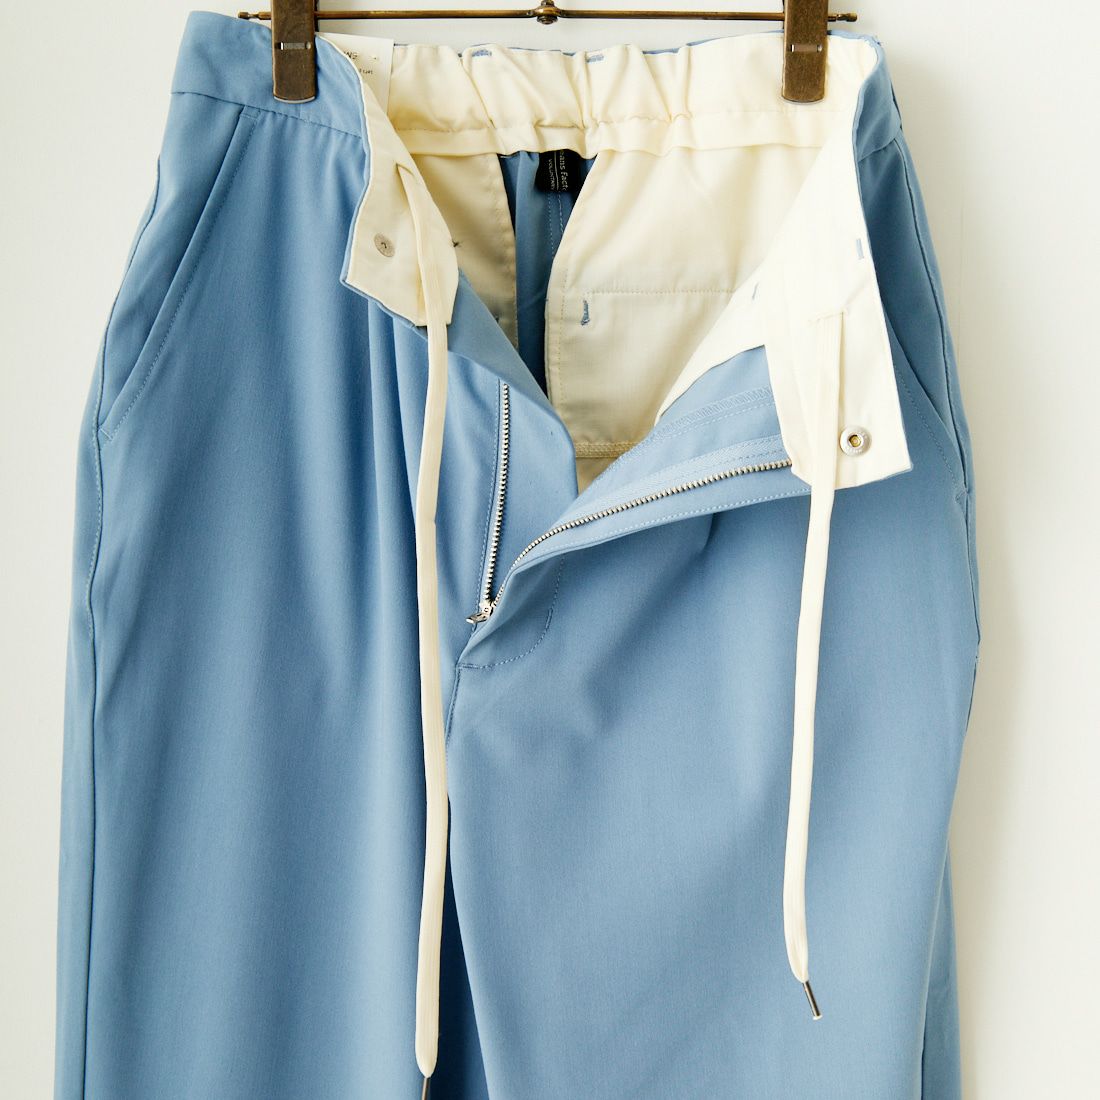 Jeans Factory Clothes [ジーンズファクトリークローズ] 2WAYドライギャバストレッチワイドテーパード [JFC-241-007] 05 BLUE